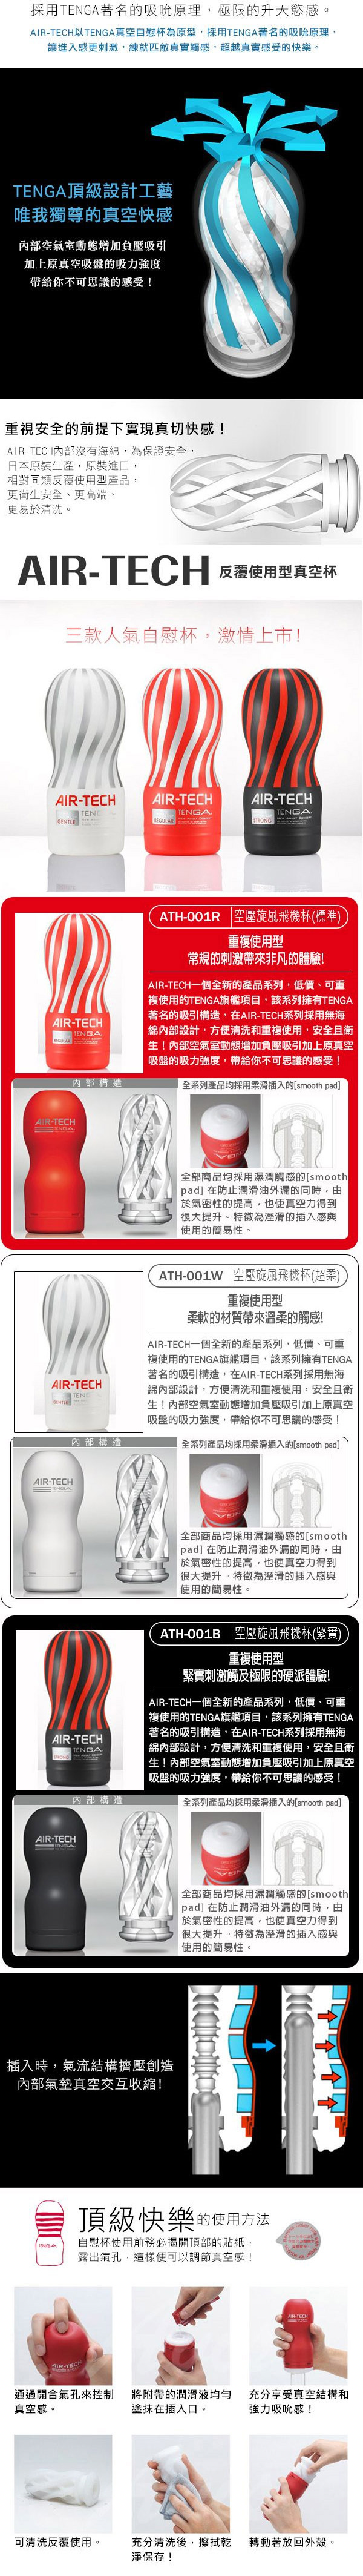 日本TENGA．AIR-TECH CUP Regular 空壓旋風杯(紅色標準型)